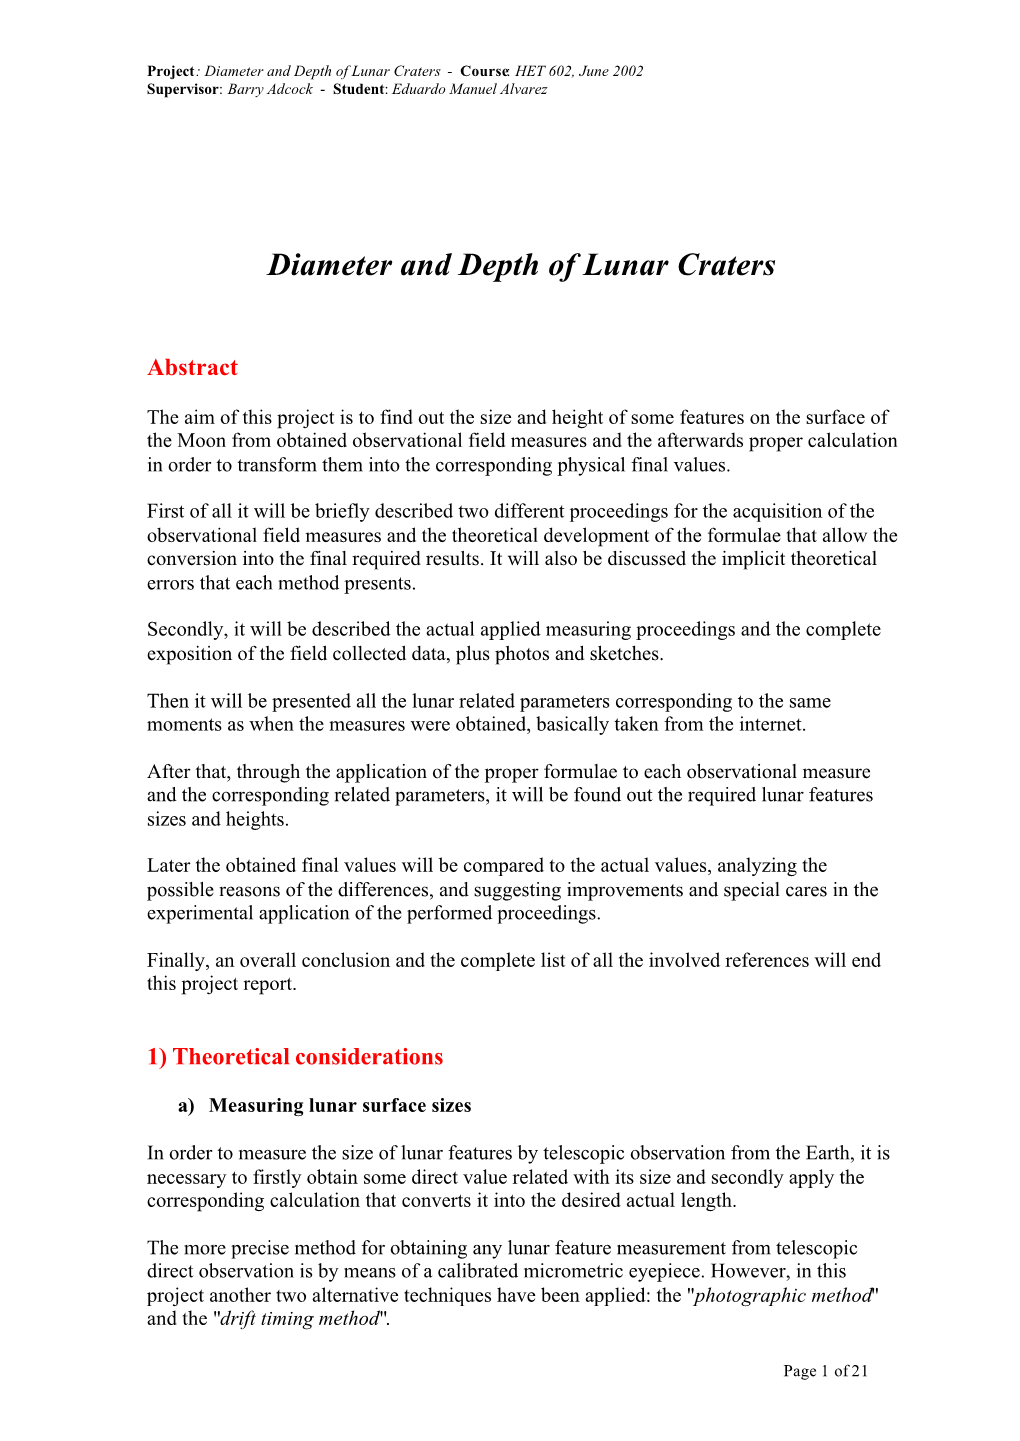 Diameter and Depth of Lunar Craters - Course: HET 602, June 2002 Supervisor: Barry Adcock - Student: Eduardo Manuel Alvarez